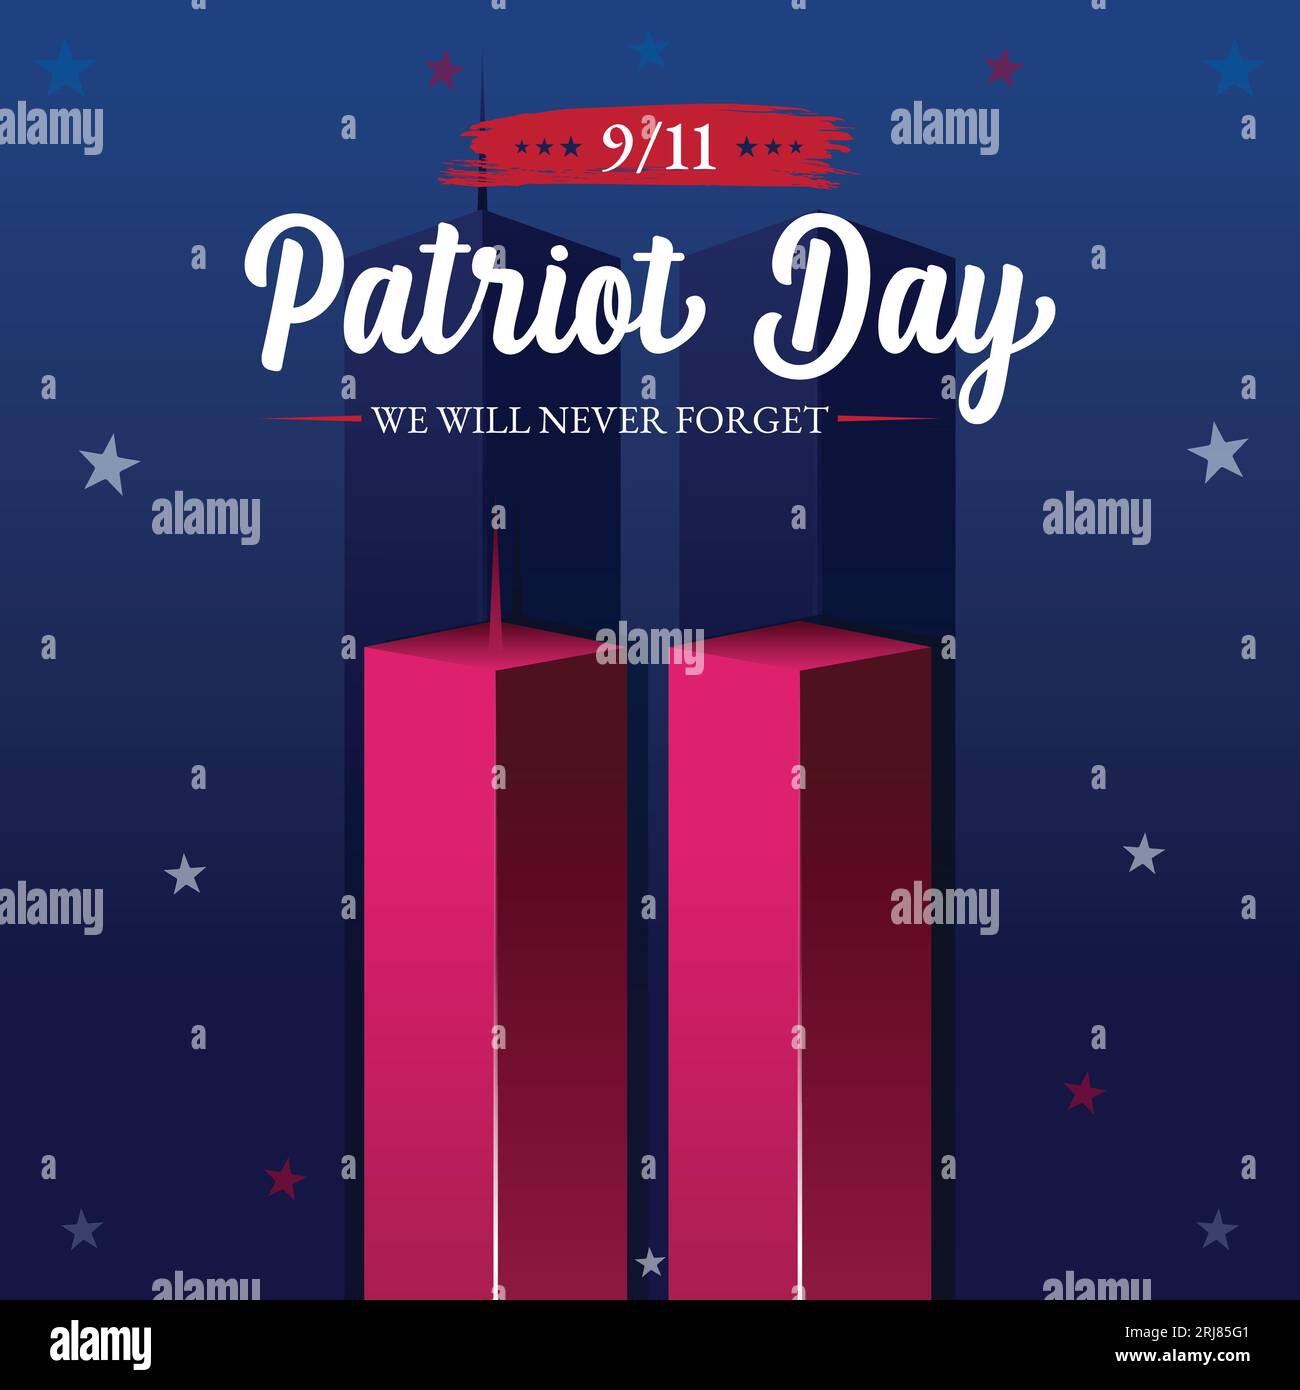 Erinnerung An Den 9. September 11. Patriot Day 11. September. Vergessen Sie nie USA 9 11. World Trade Center Nine Eleven Vorlage In Rot, Weiß Und Blau Stock Vektor